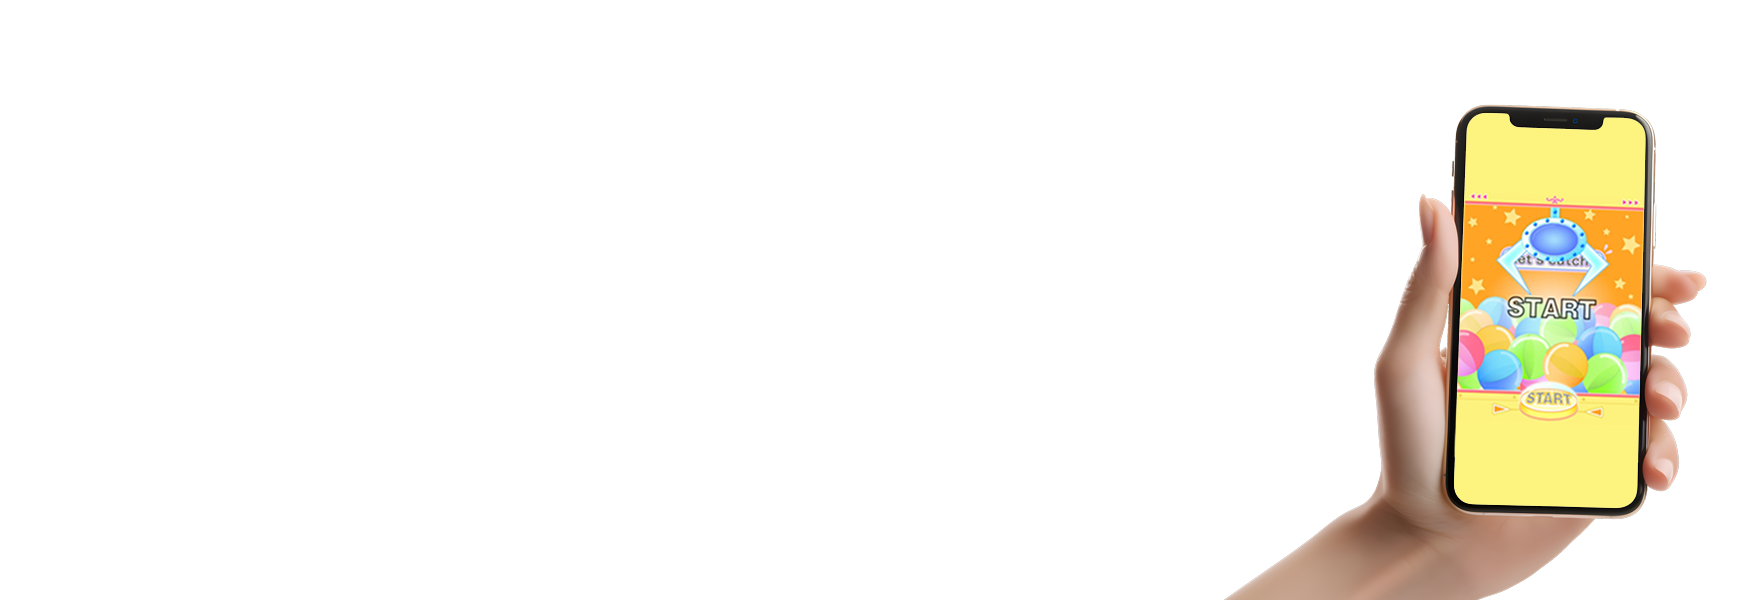 Web抽選キャンペーンシステム-begame.jp